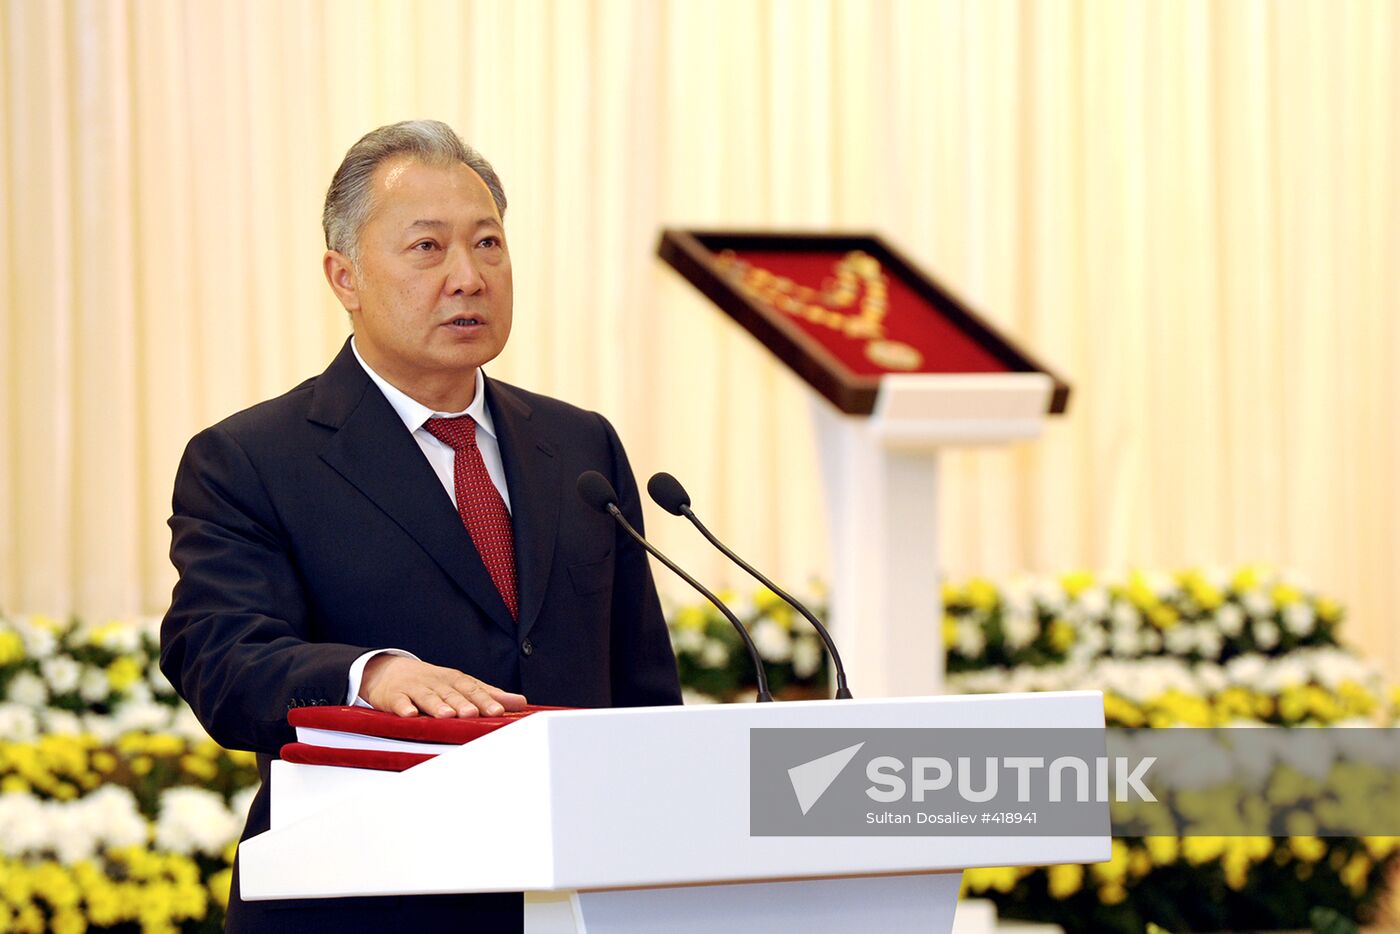 Kurmanbek Bakiyev's inauguration in Kyrgyzstan